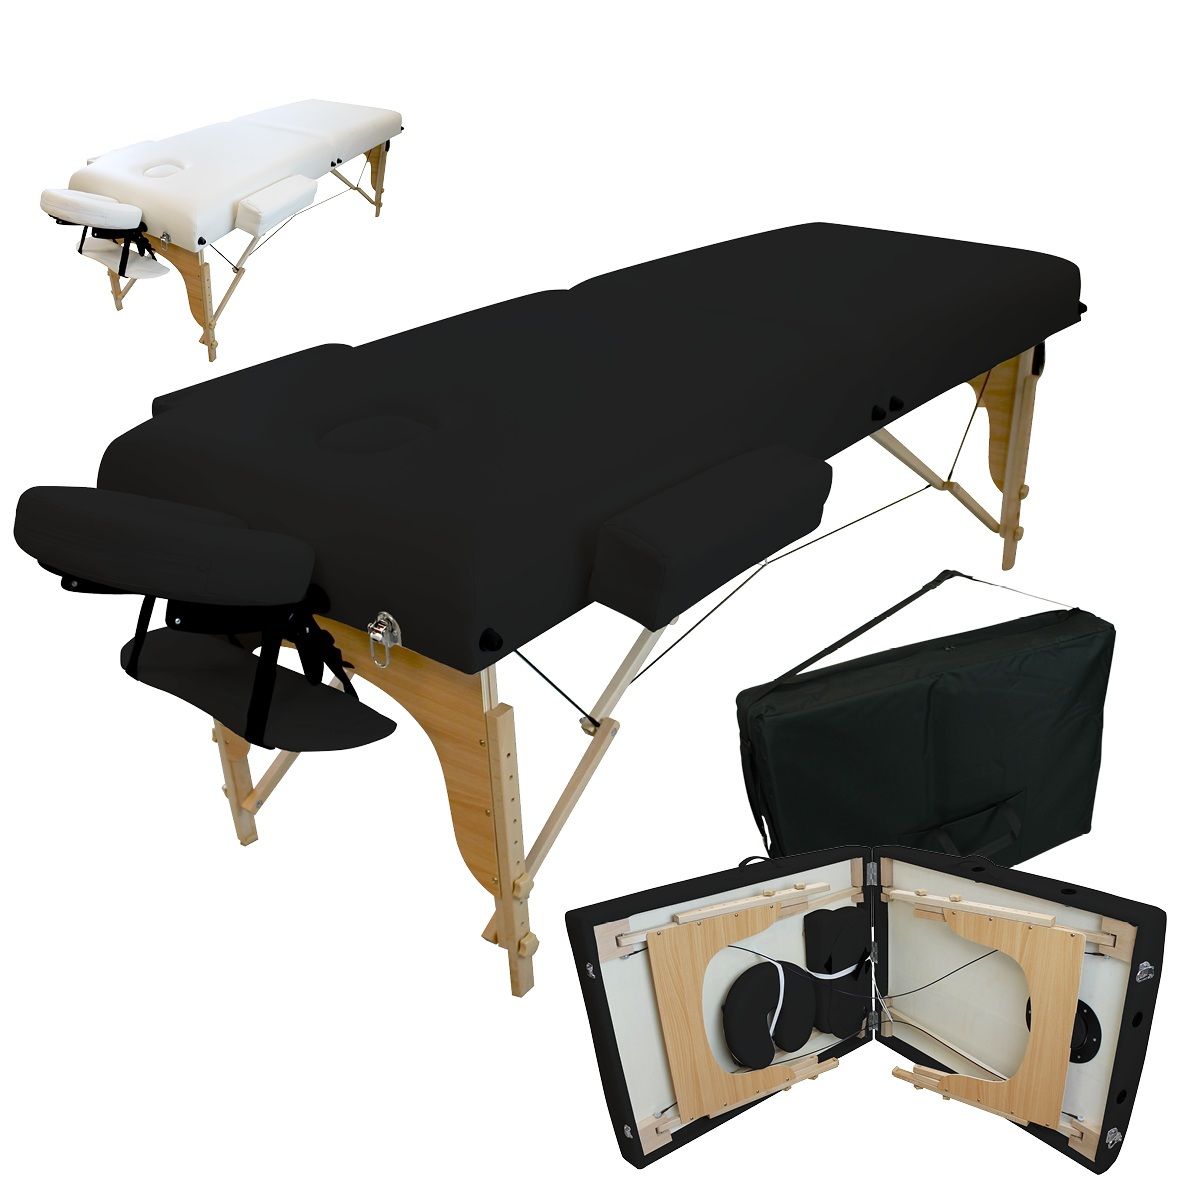 Accessoires et housse de transport Vivezen ® Table de massage pliante 2 zones en bois avec panneau Reiki 10 coloris Norme CE